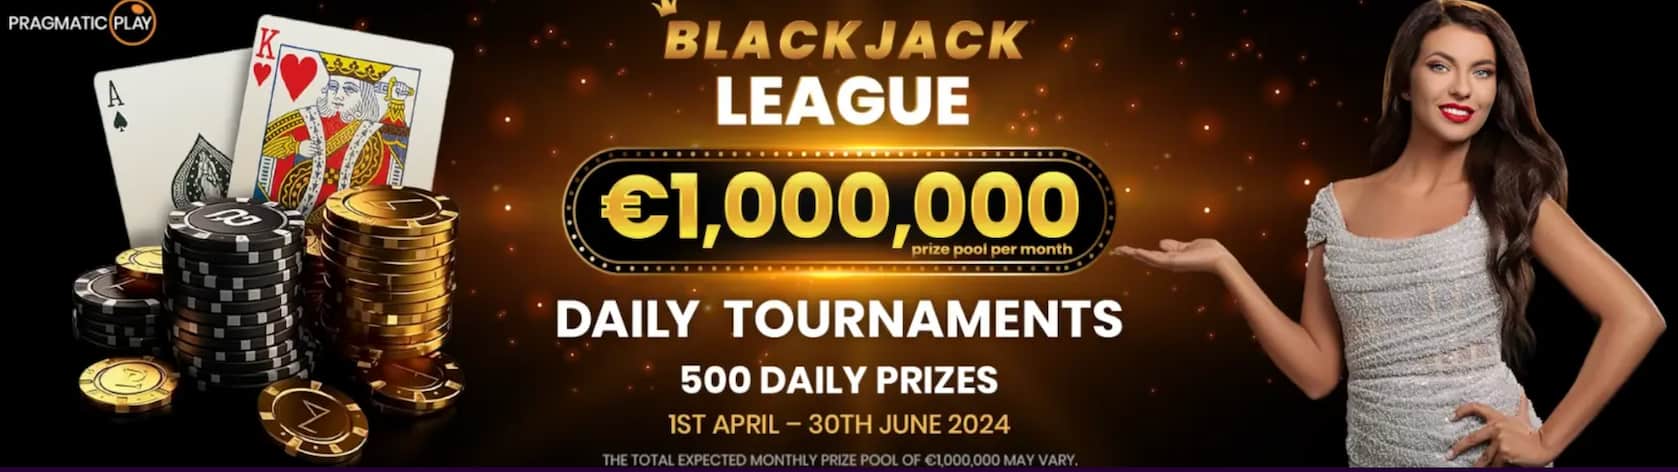 slotparadise blackjack league